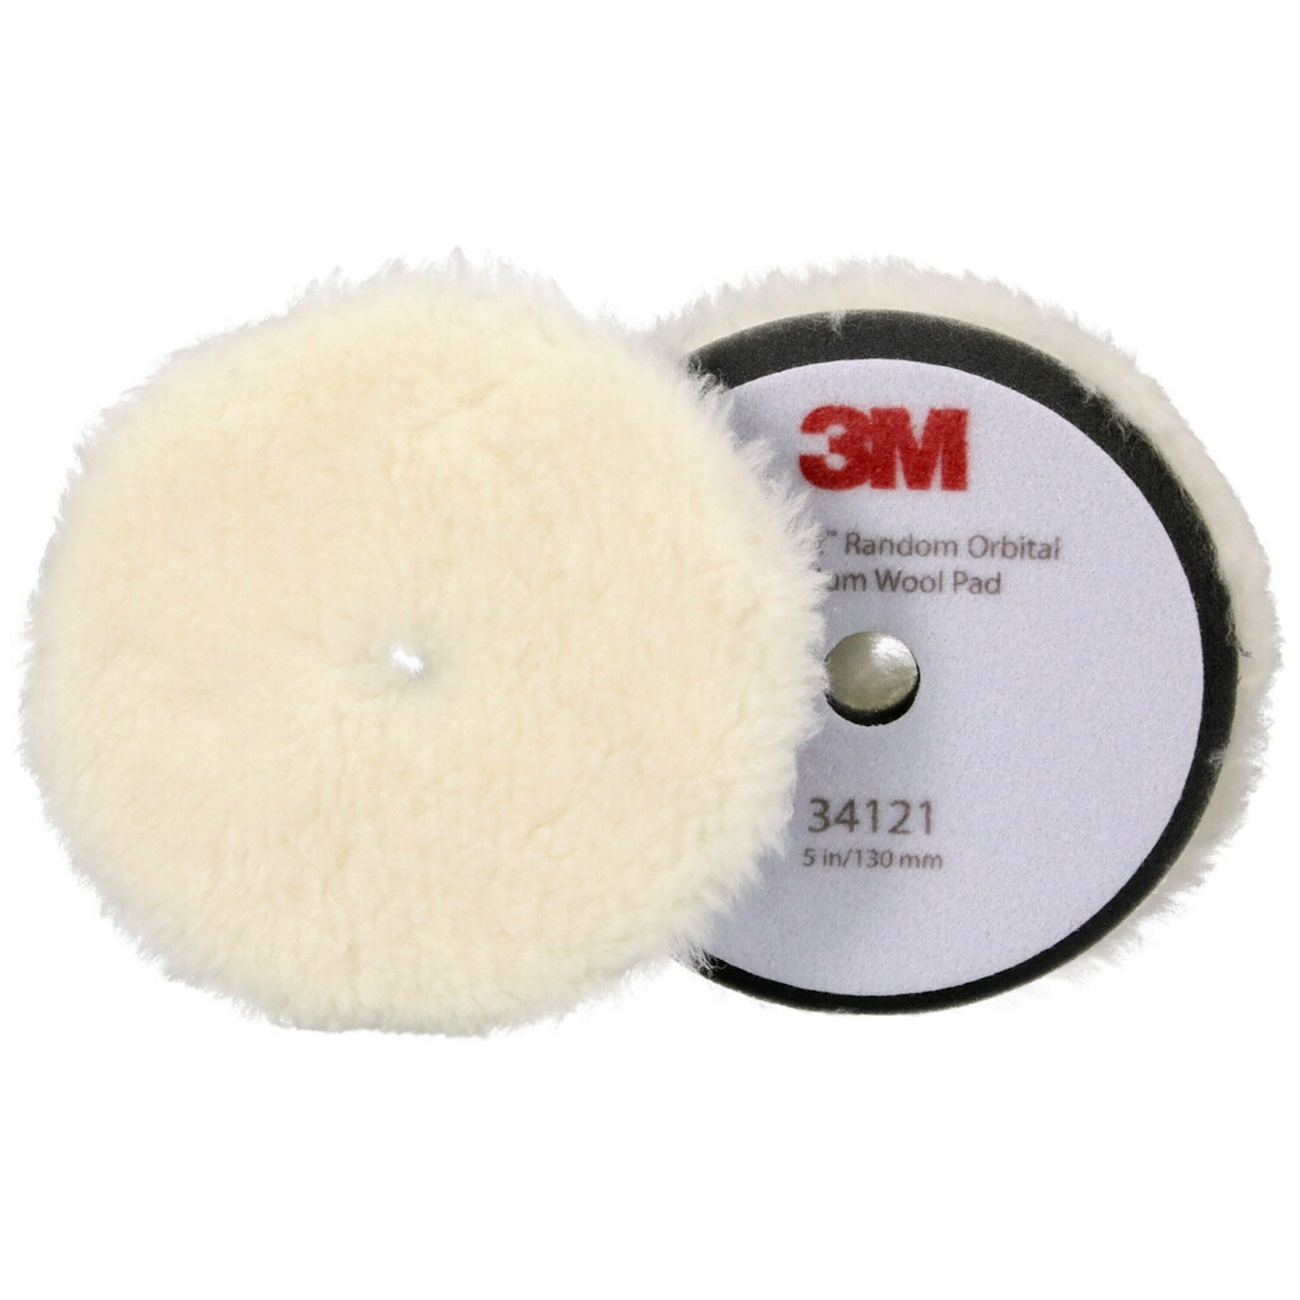 3M Perfect-it almohadilla pulidora con piel pulidora para pulidora excéntrica, mediana, blanca, 130 mm, 34121 (paquete = 2 piezas)